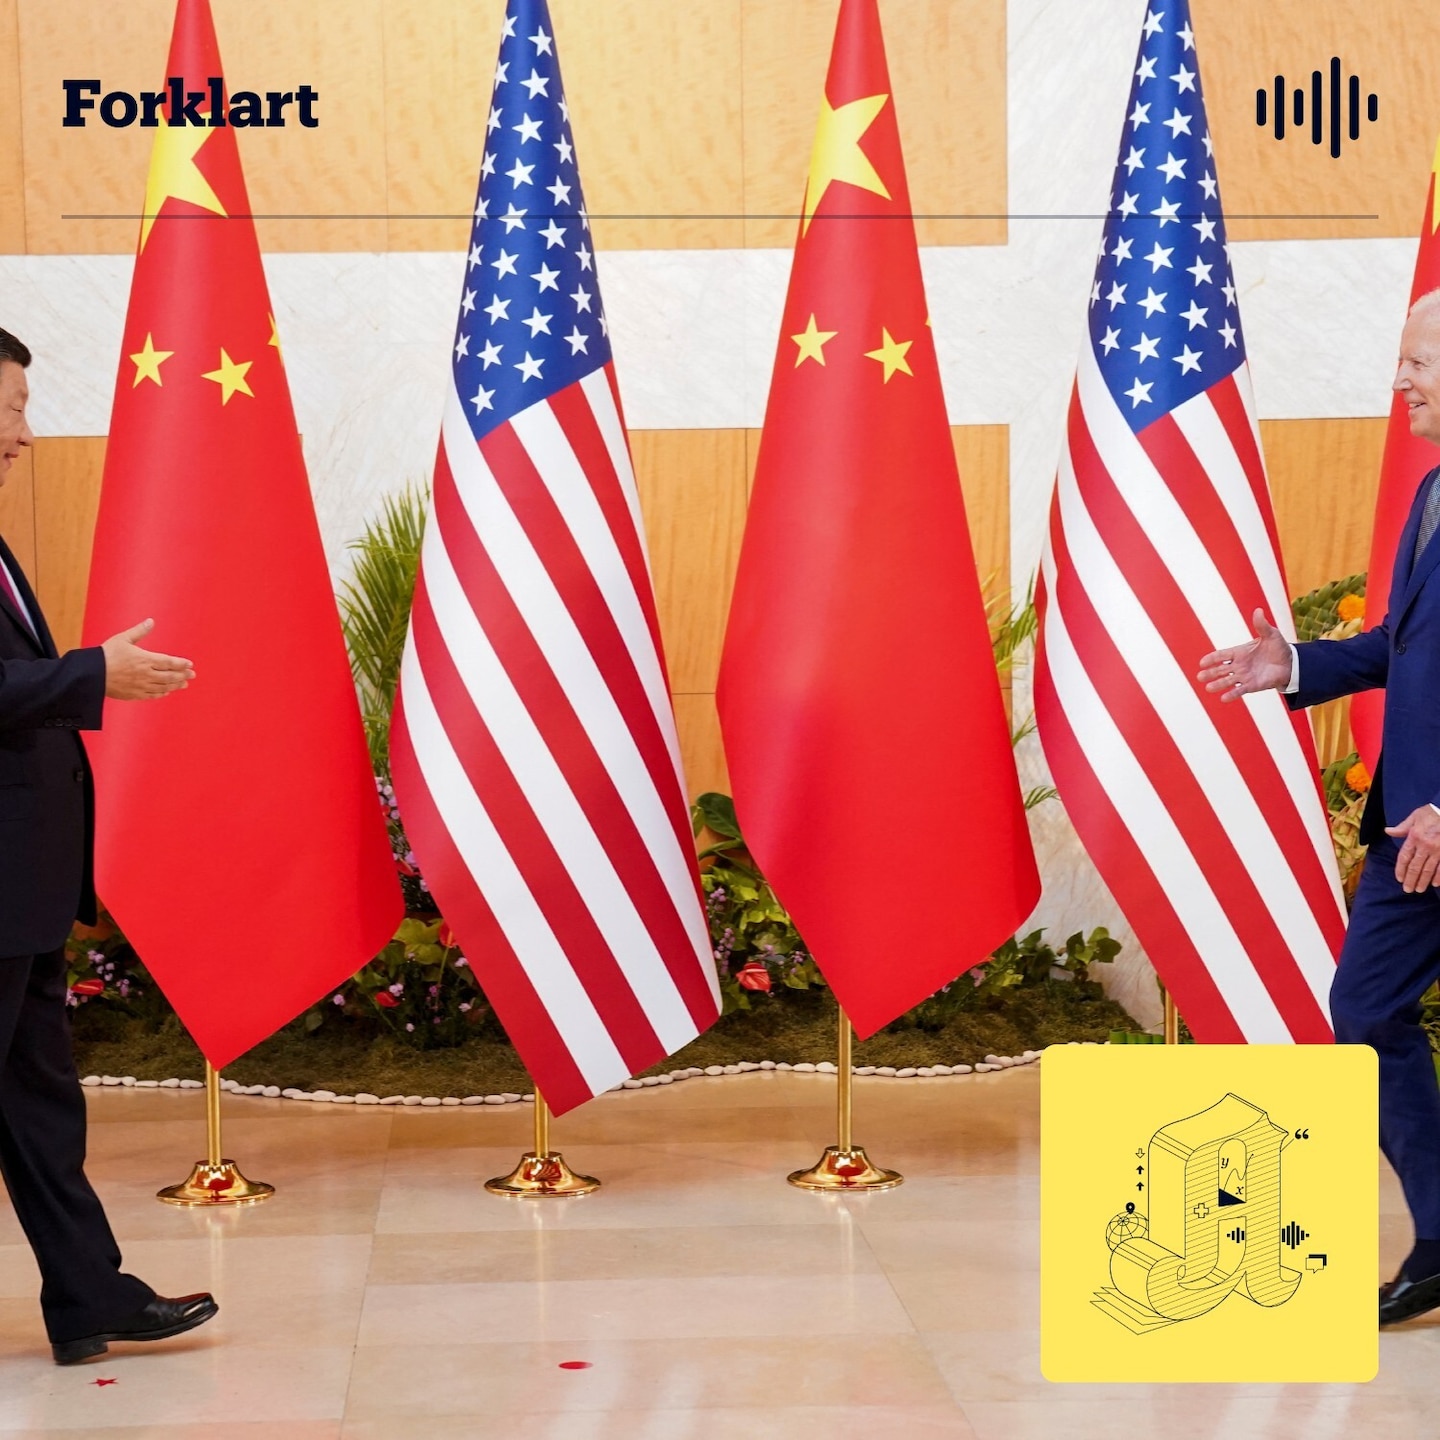 USA mot Kina: Hva skal til for at det blir krig?